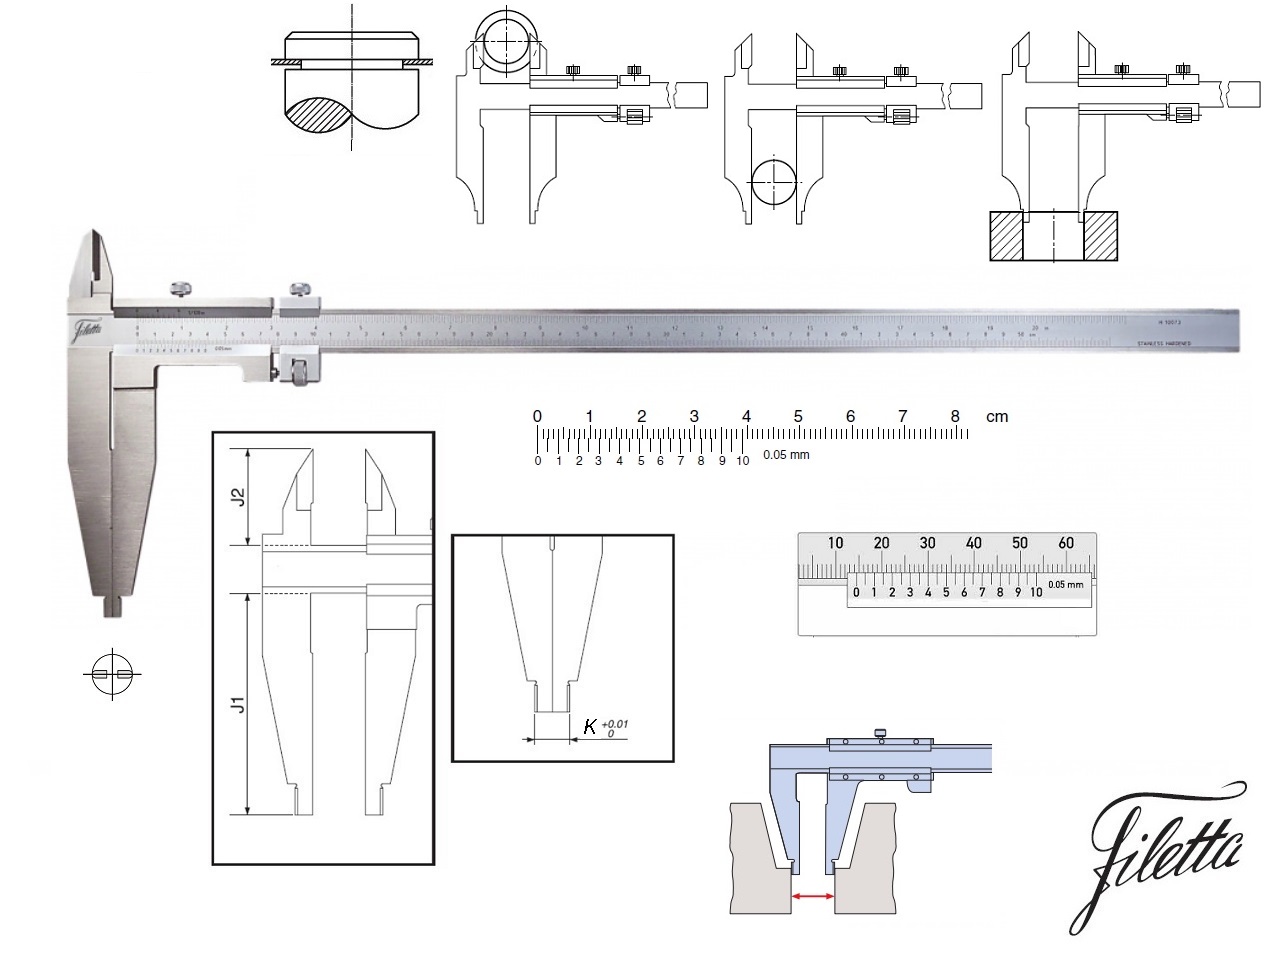 Posuvné měřítko Filetta 0-500 mm, čelisti 150 mm, s měřicími nožíky pro vnější měření